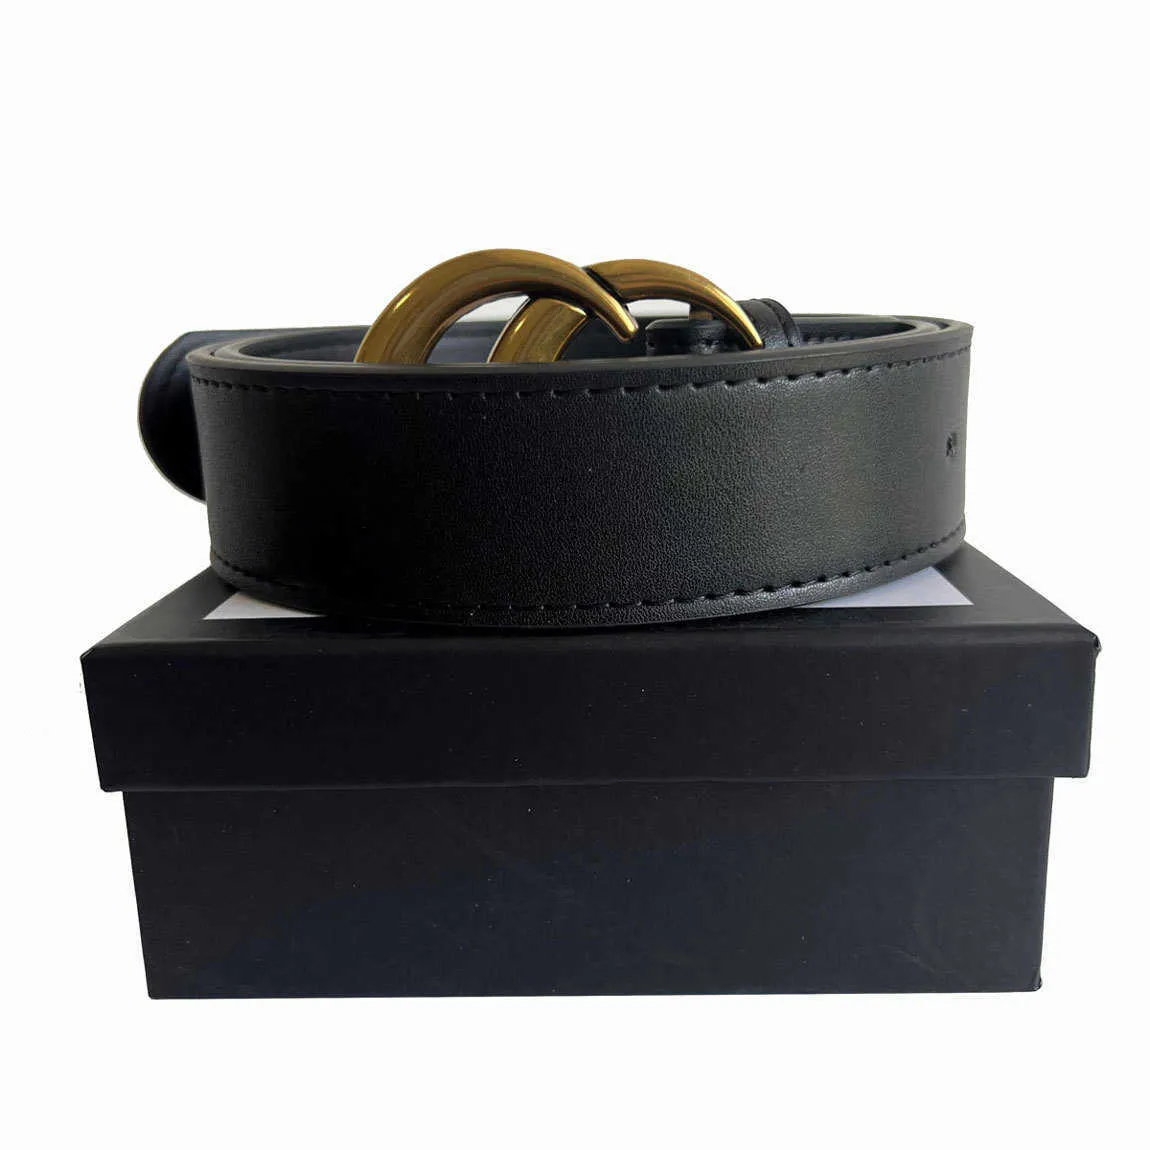 Hombres Diseñador Cinturón Moda Cuero genuino mujeres hombres Letra Doble G Hebilla Cinturones Lujo Formal Jeans Vestido Cinturón Negro Colores Ancho 2.0 cm 3.4 cm 3.8 cm Venta al por mayor